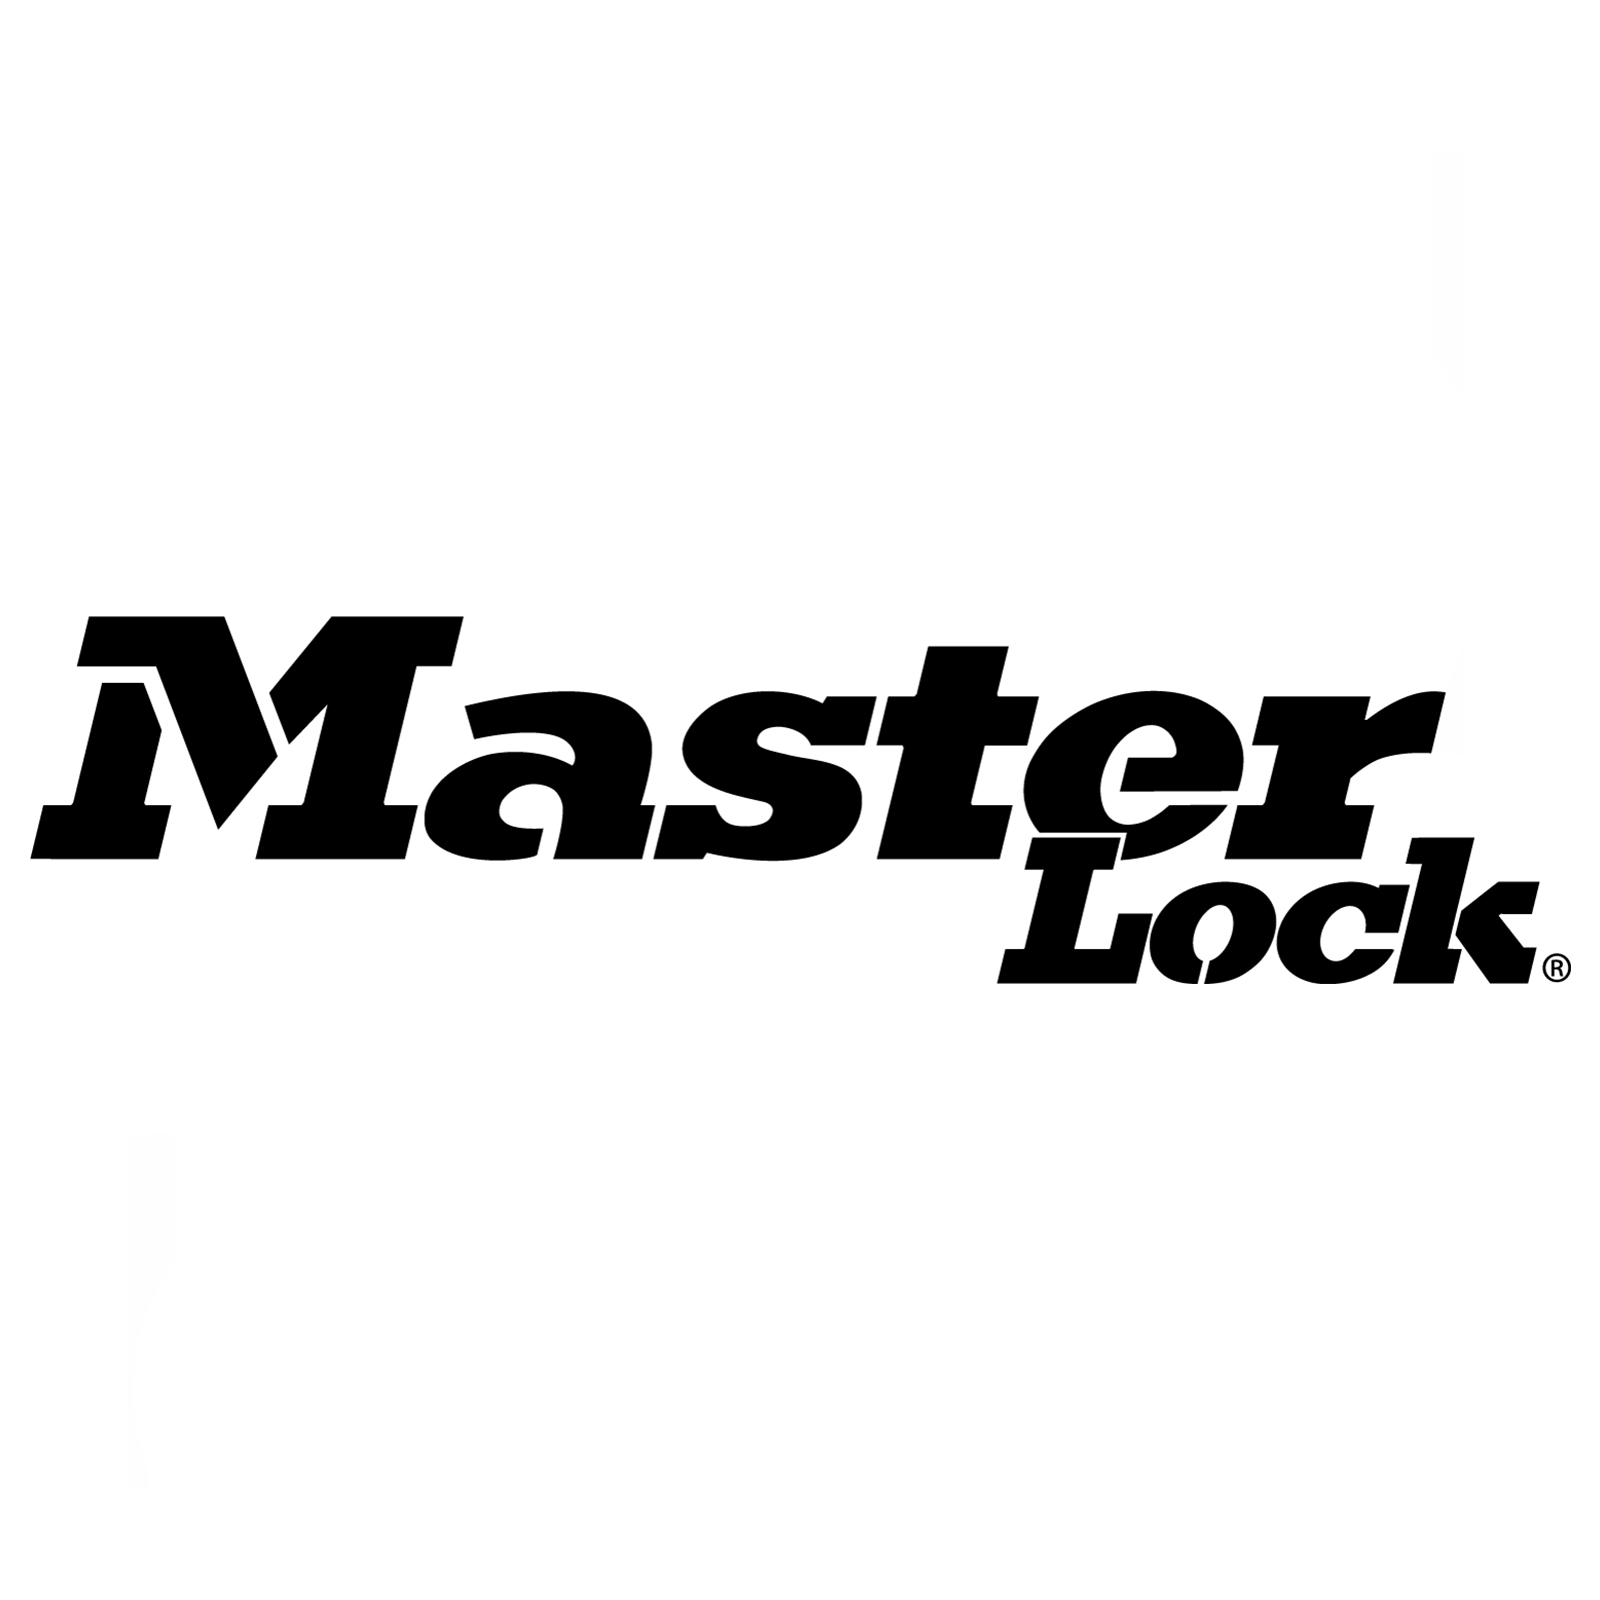 master lock key safe troubleshooting